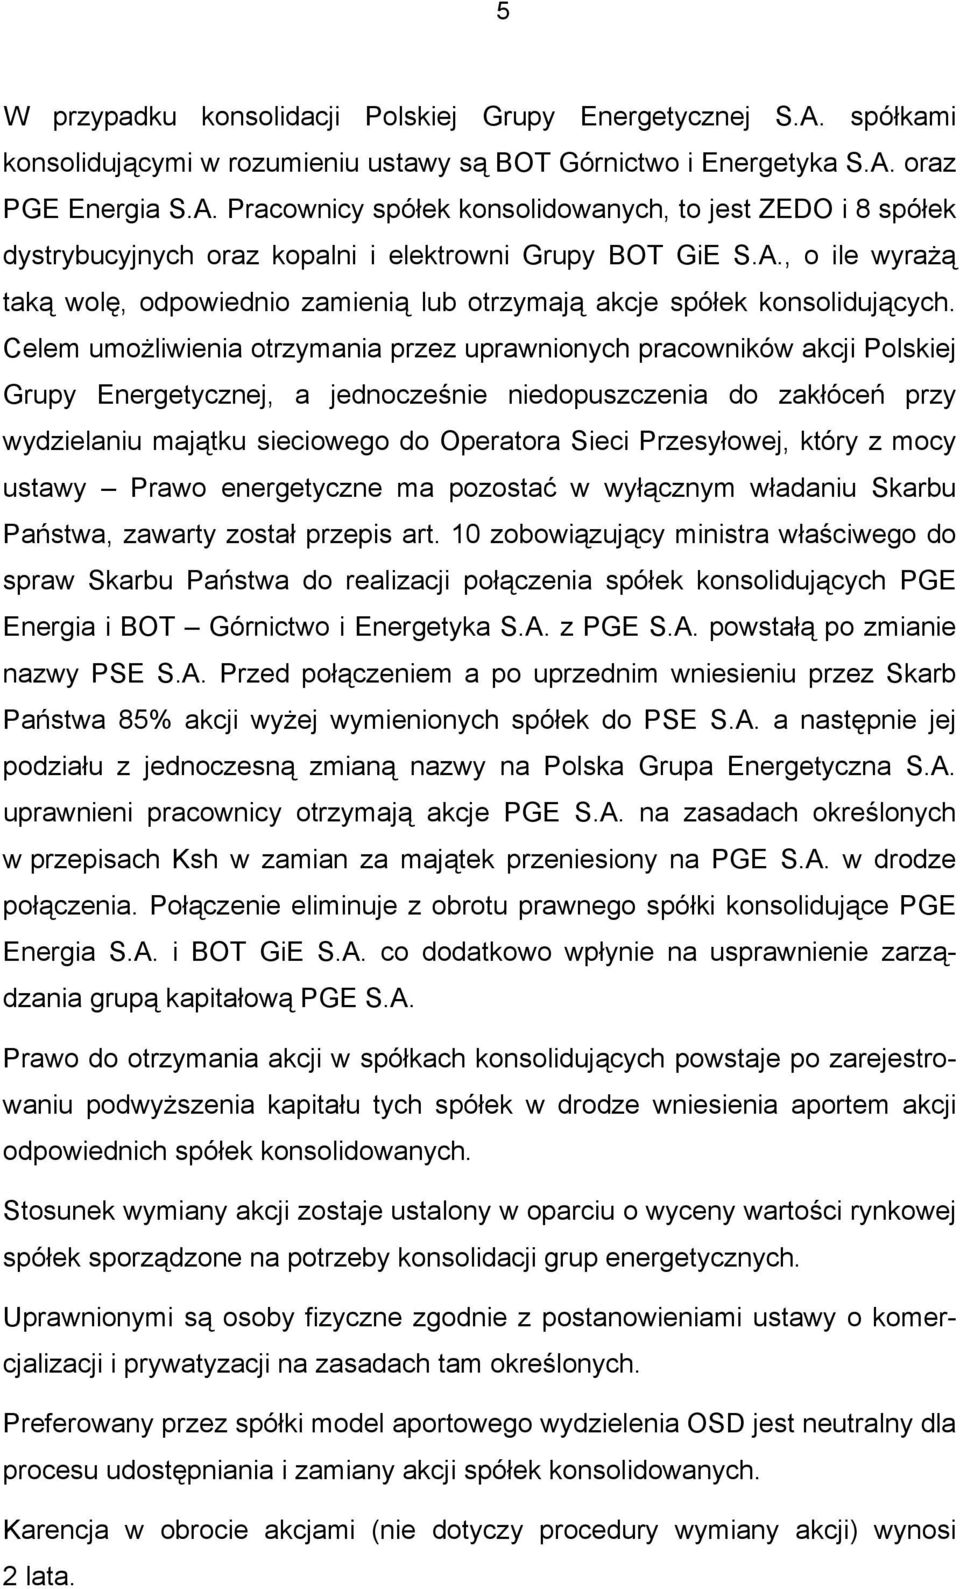 Celem umożliwienia otrzymania przez uprawnionych pracowników akcji Polskiej Grupy Energetycznej, a jednocześnie niedopuszczenia do zakłóceń przy wydzielaniu majątku sieciowego do Operatora Sieci